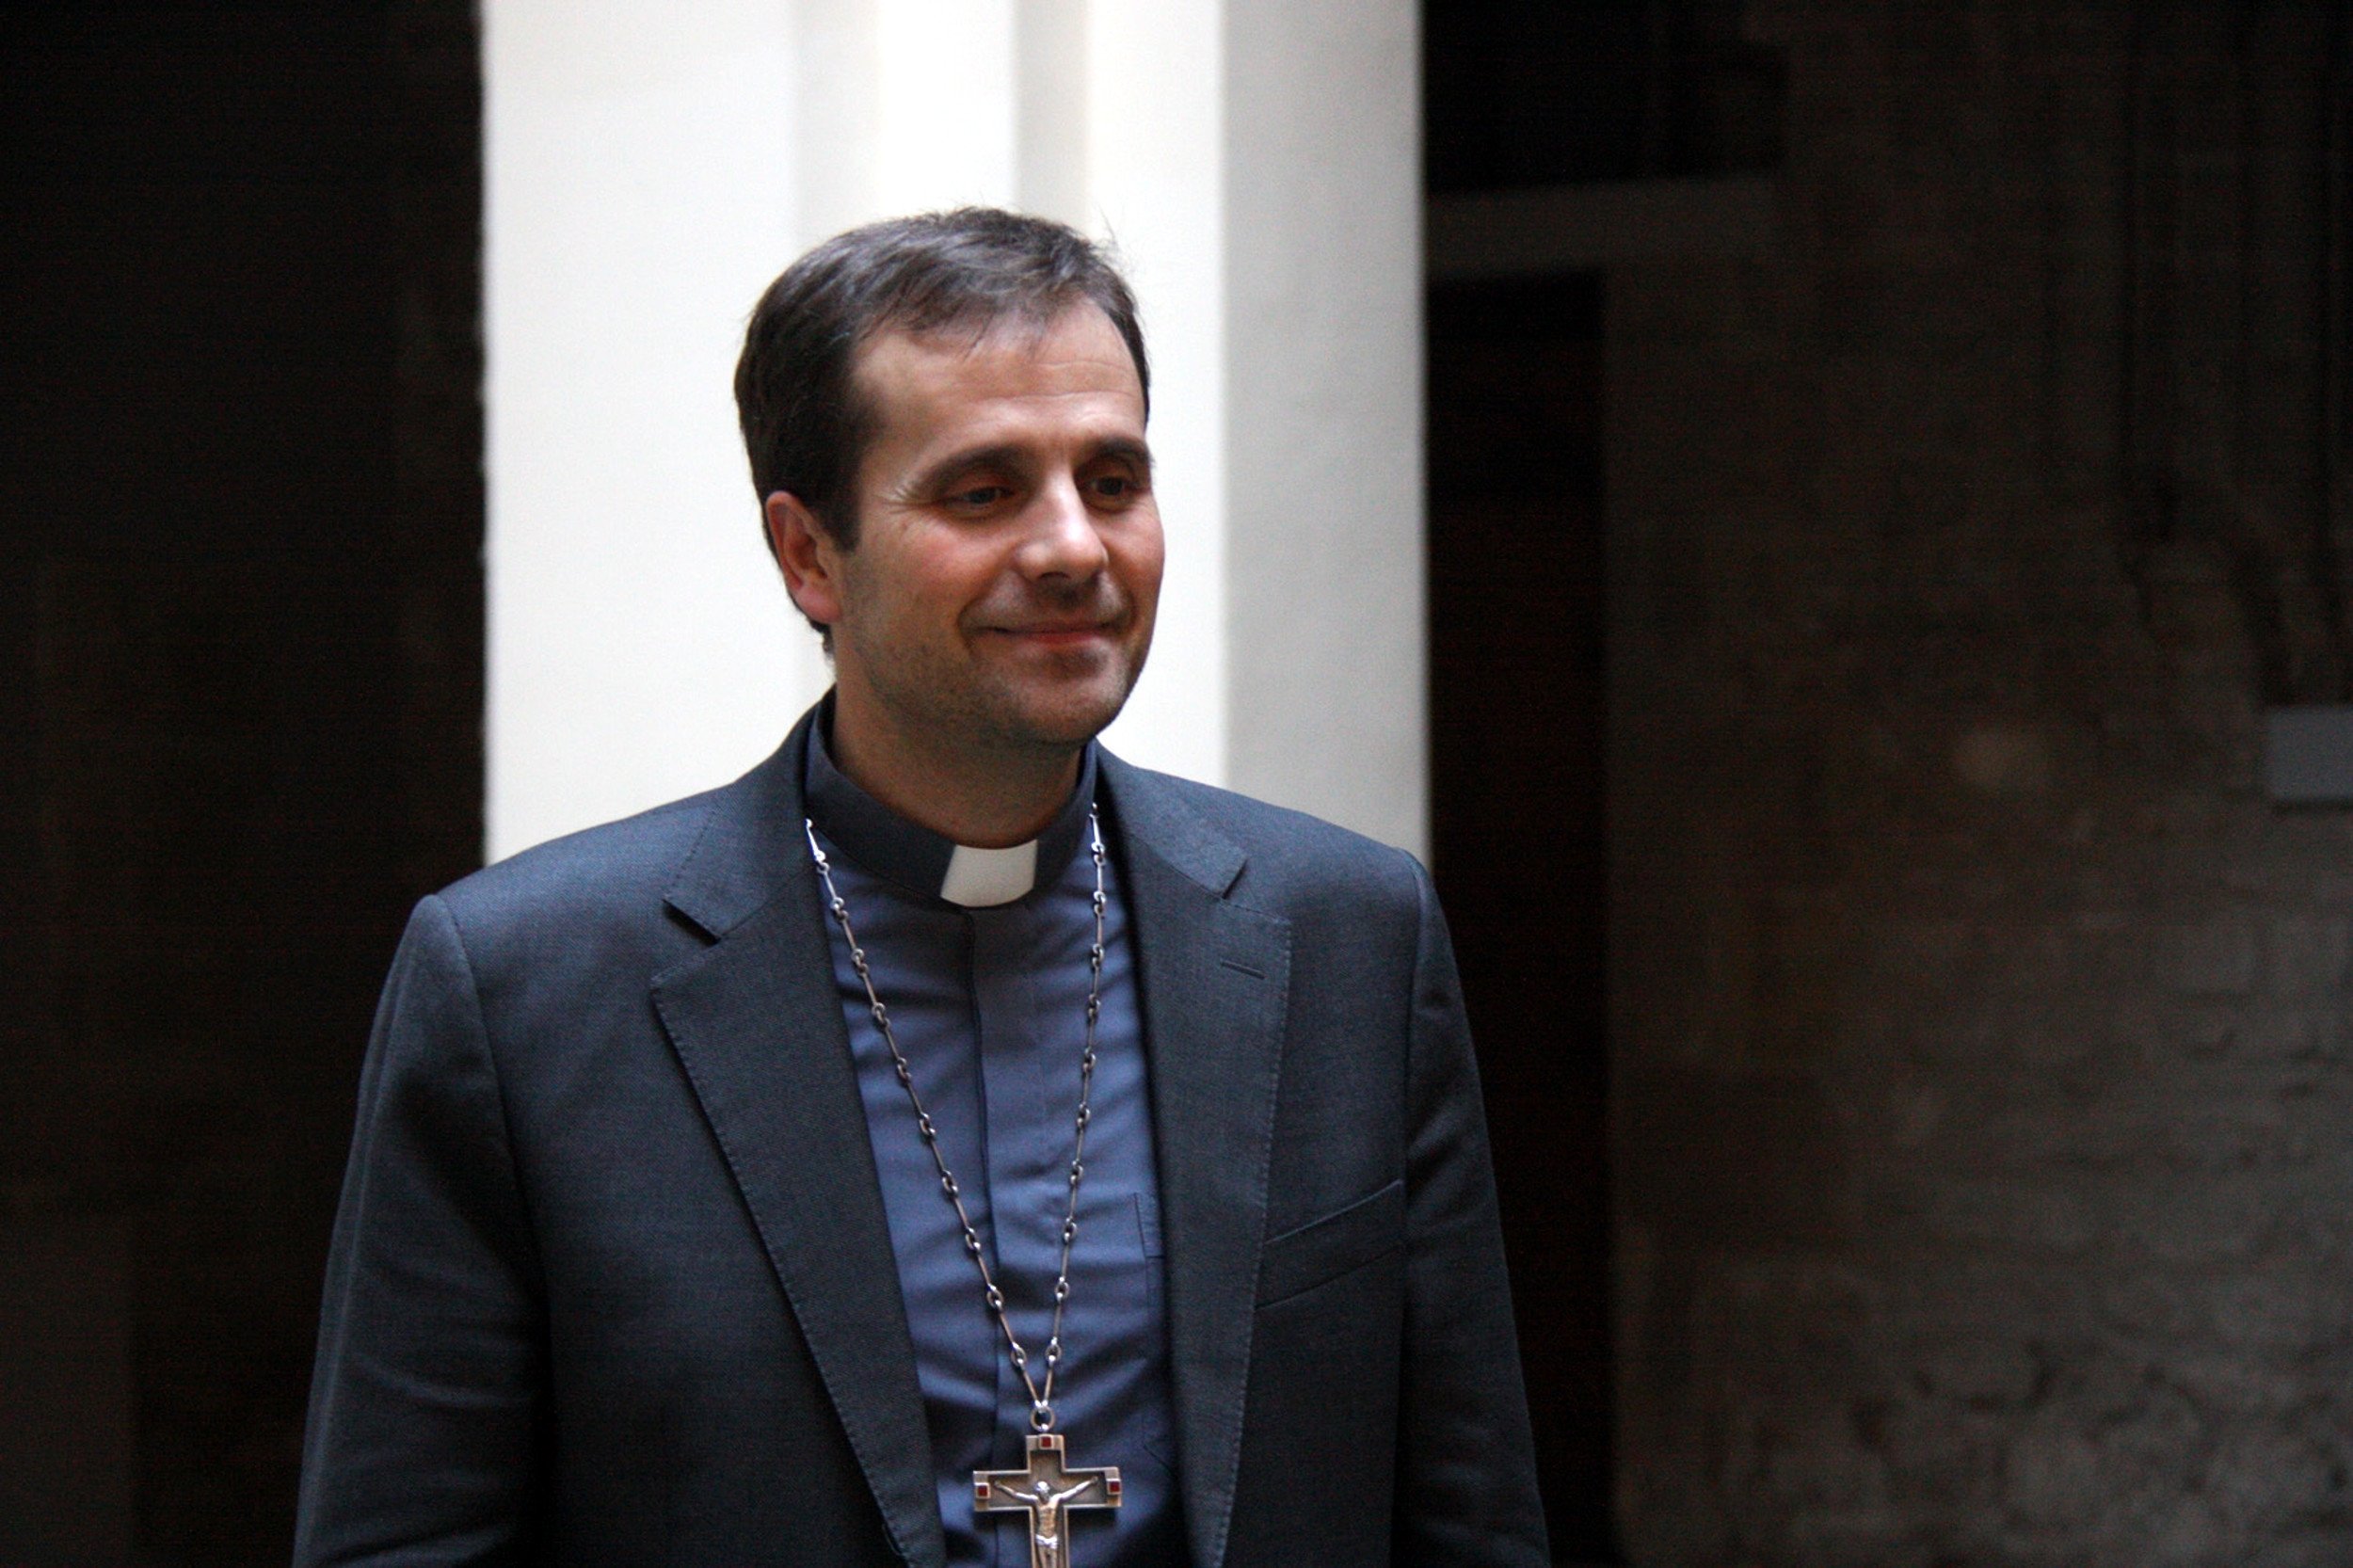 El bisbe de Solsona vol prohibir els actes laics a les esglésies de la seva diòcesi